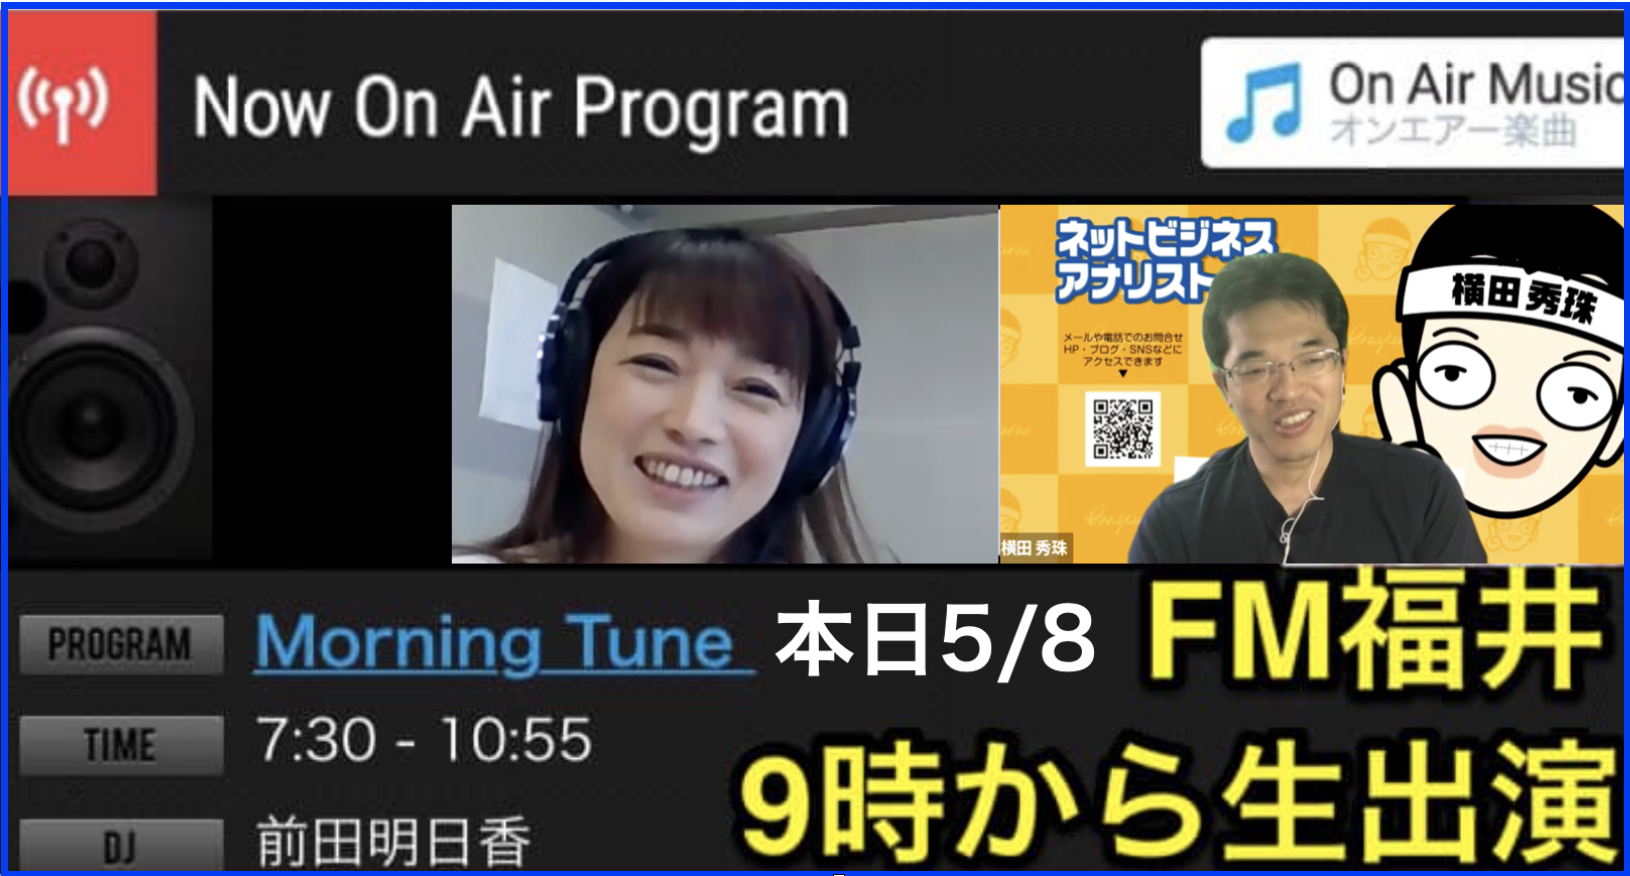 2020.5.8 FM福井｢Morning Tune(モーニングチューン)｣にラジオ出演し｢ウィズコロナ時代のIT｣について語る